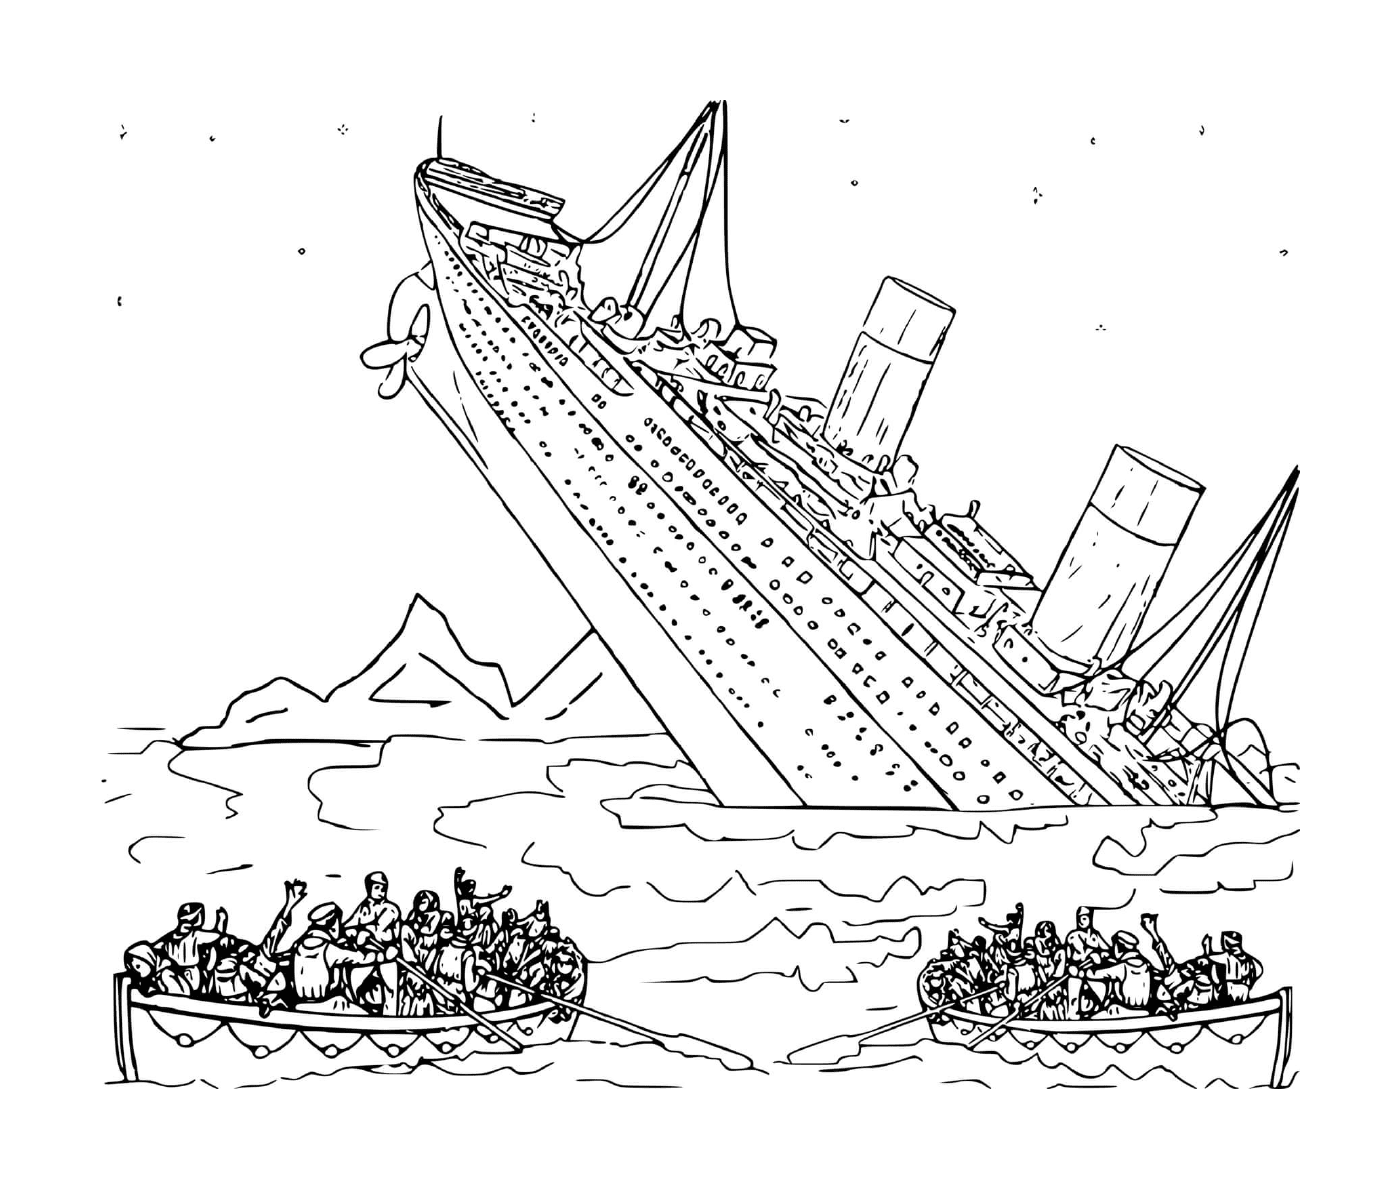  Um barco na água com pessoas a bordo 